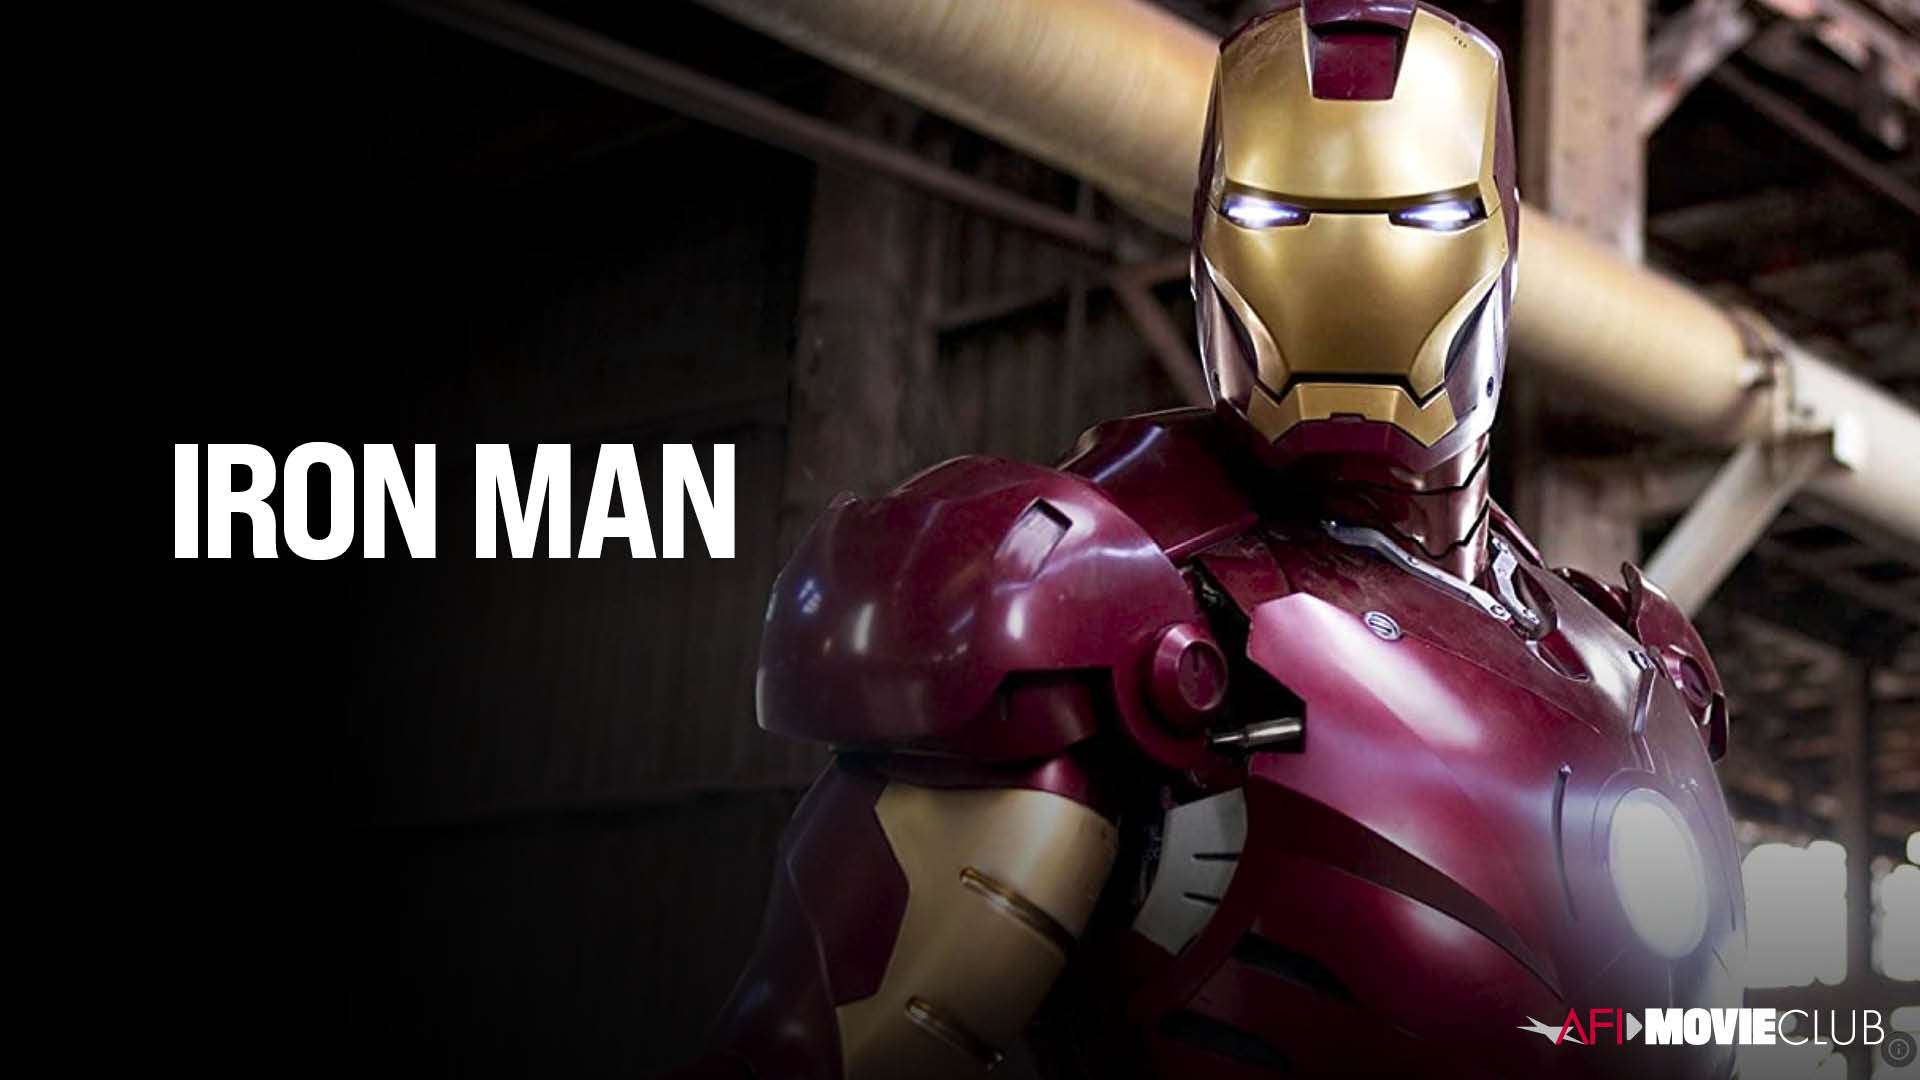 Iron Man Film Still - Iron Man